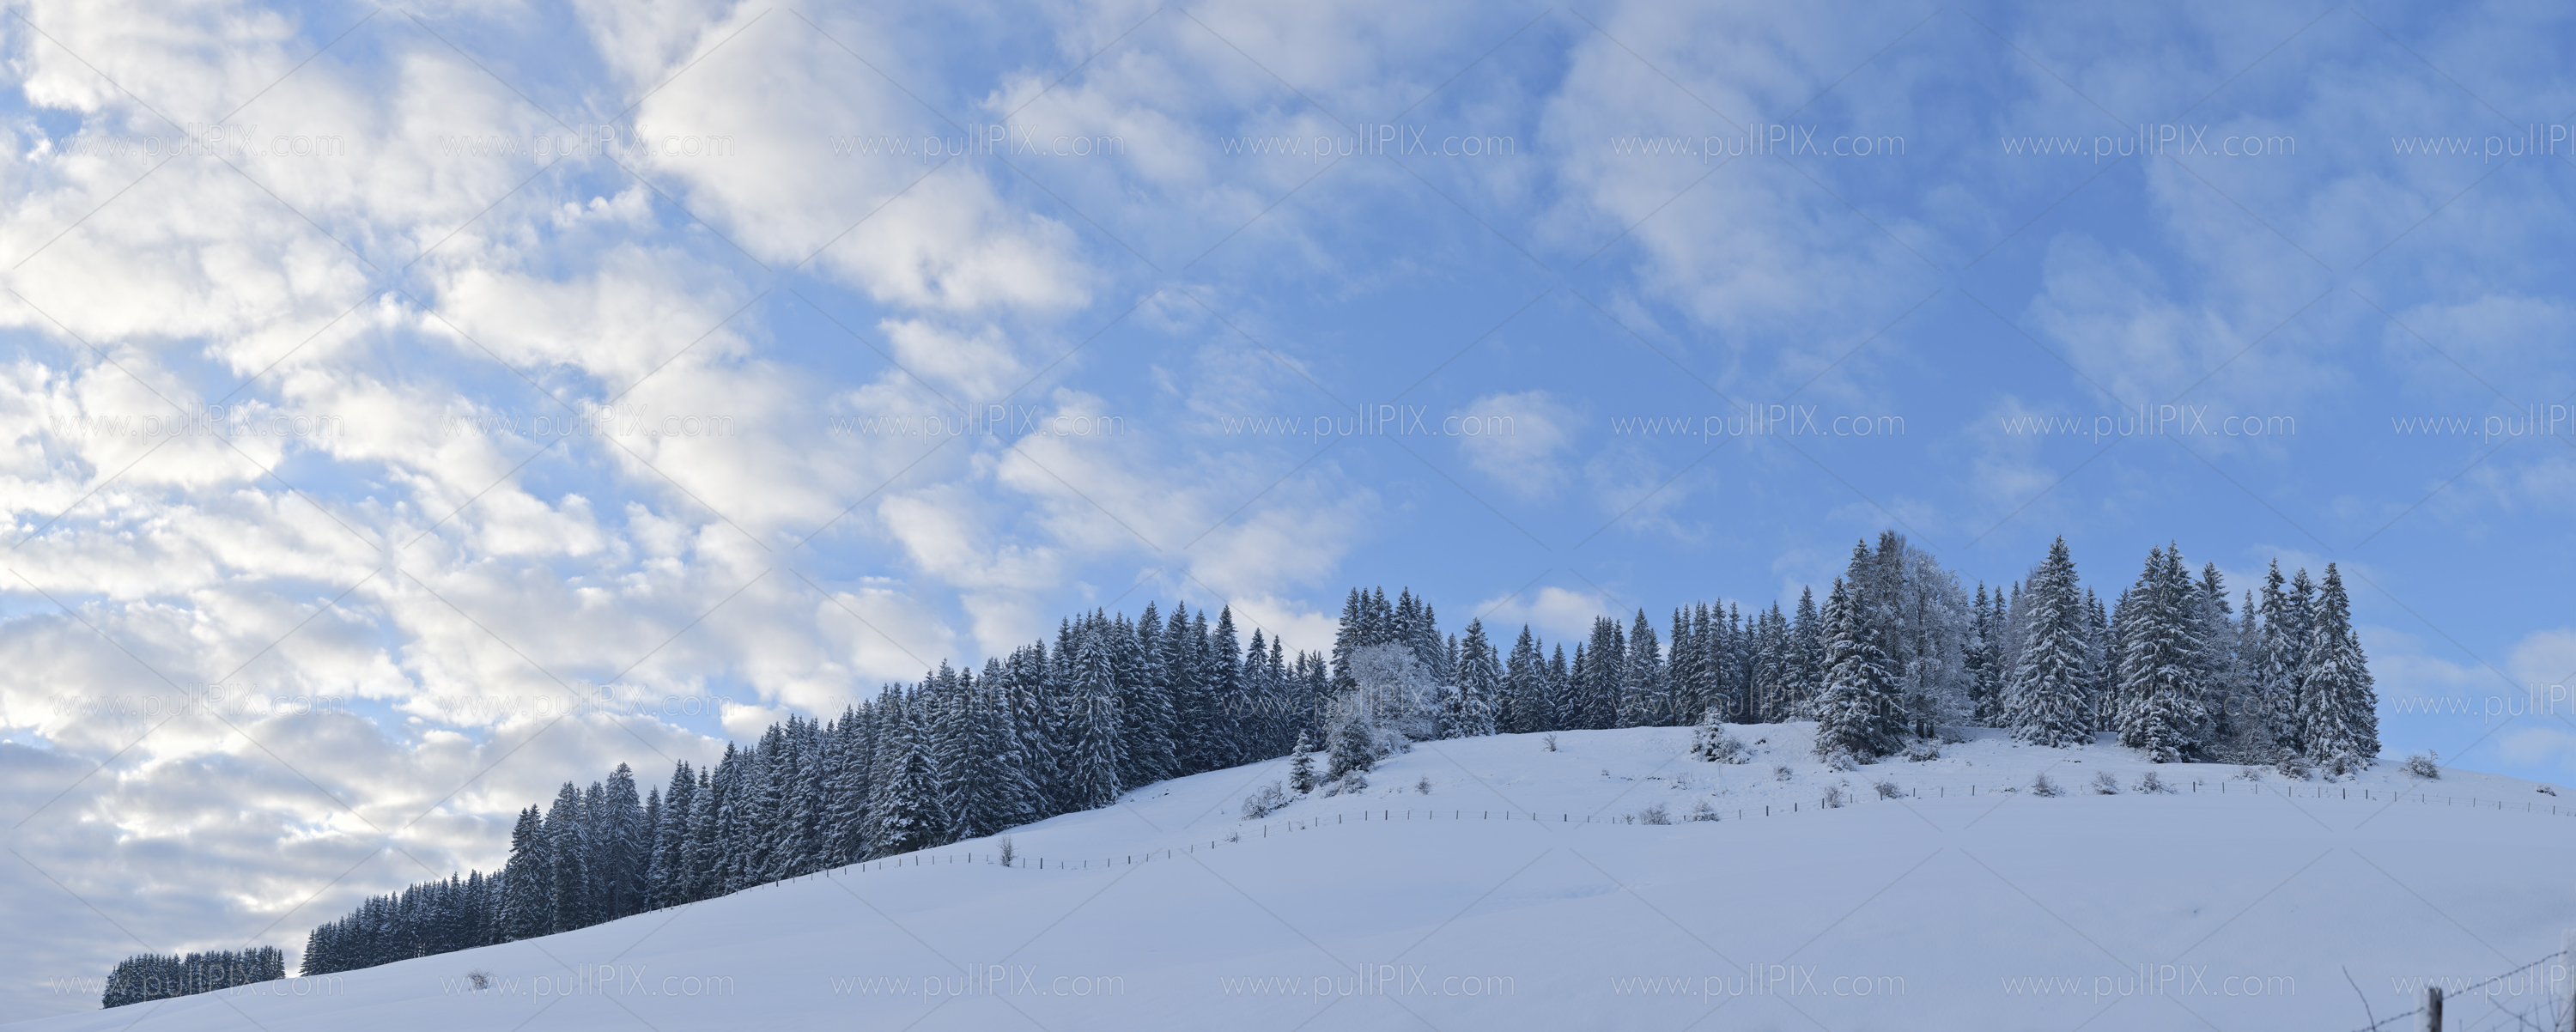 Preview winterliches allgaeu_13.jpg